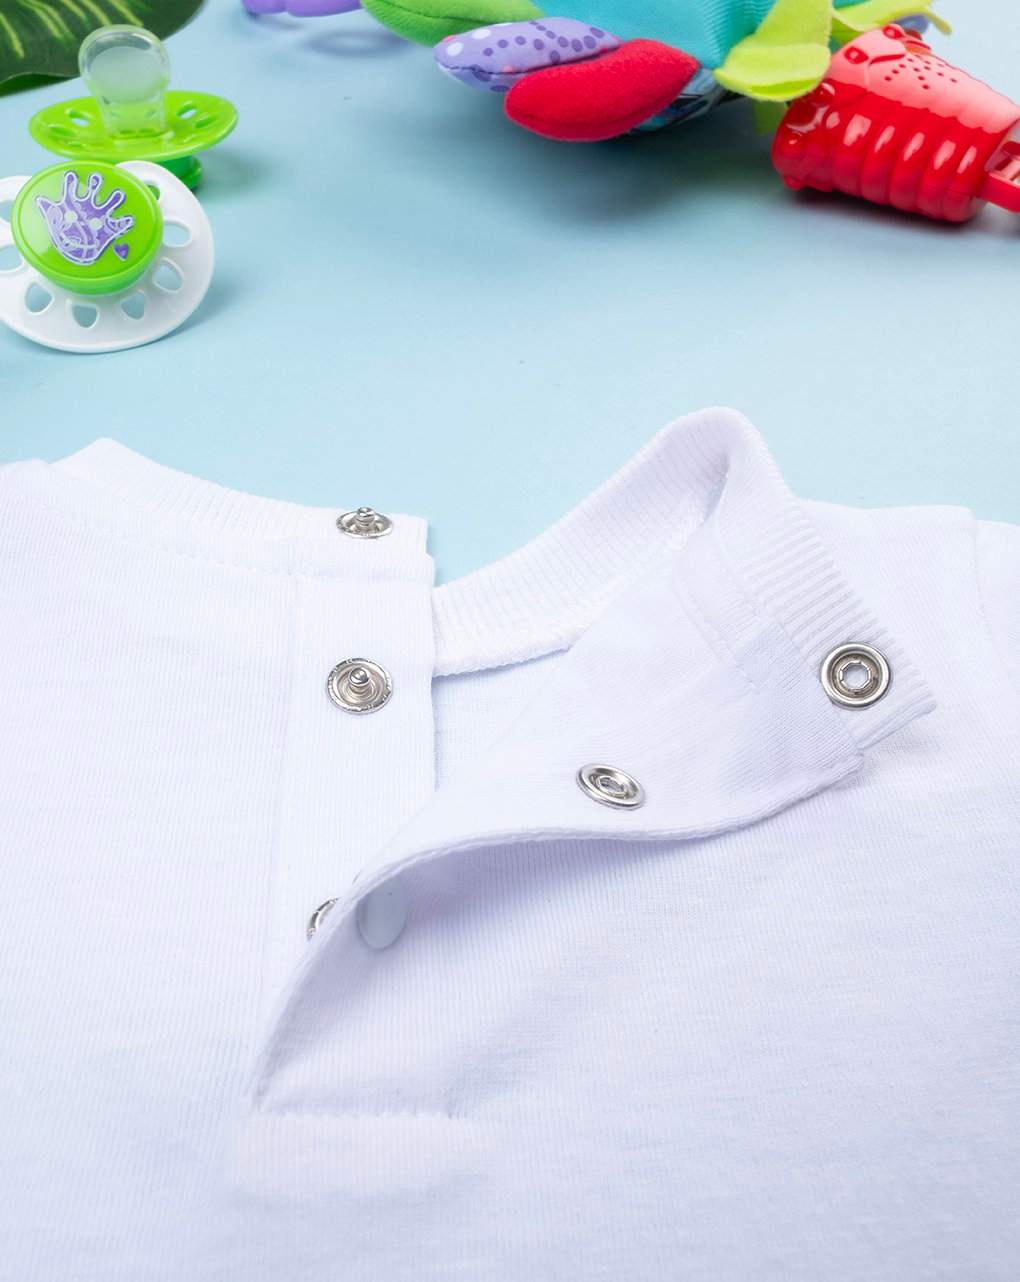 βρεφική μπλούζα λευκή με δεινοσαυράκια για αγόρι - Prénatal